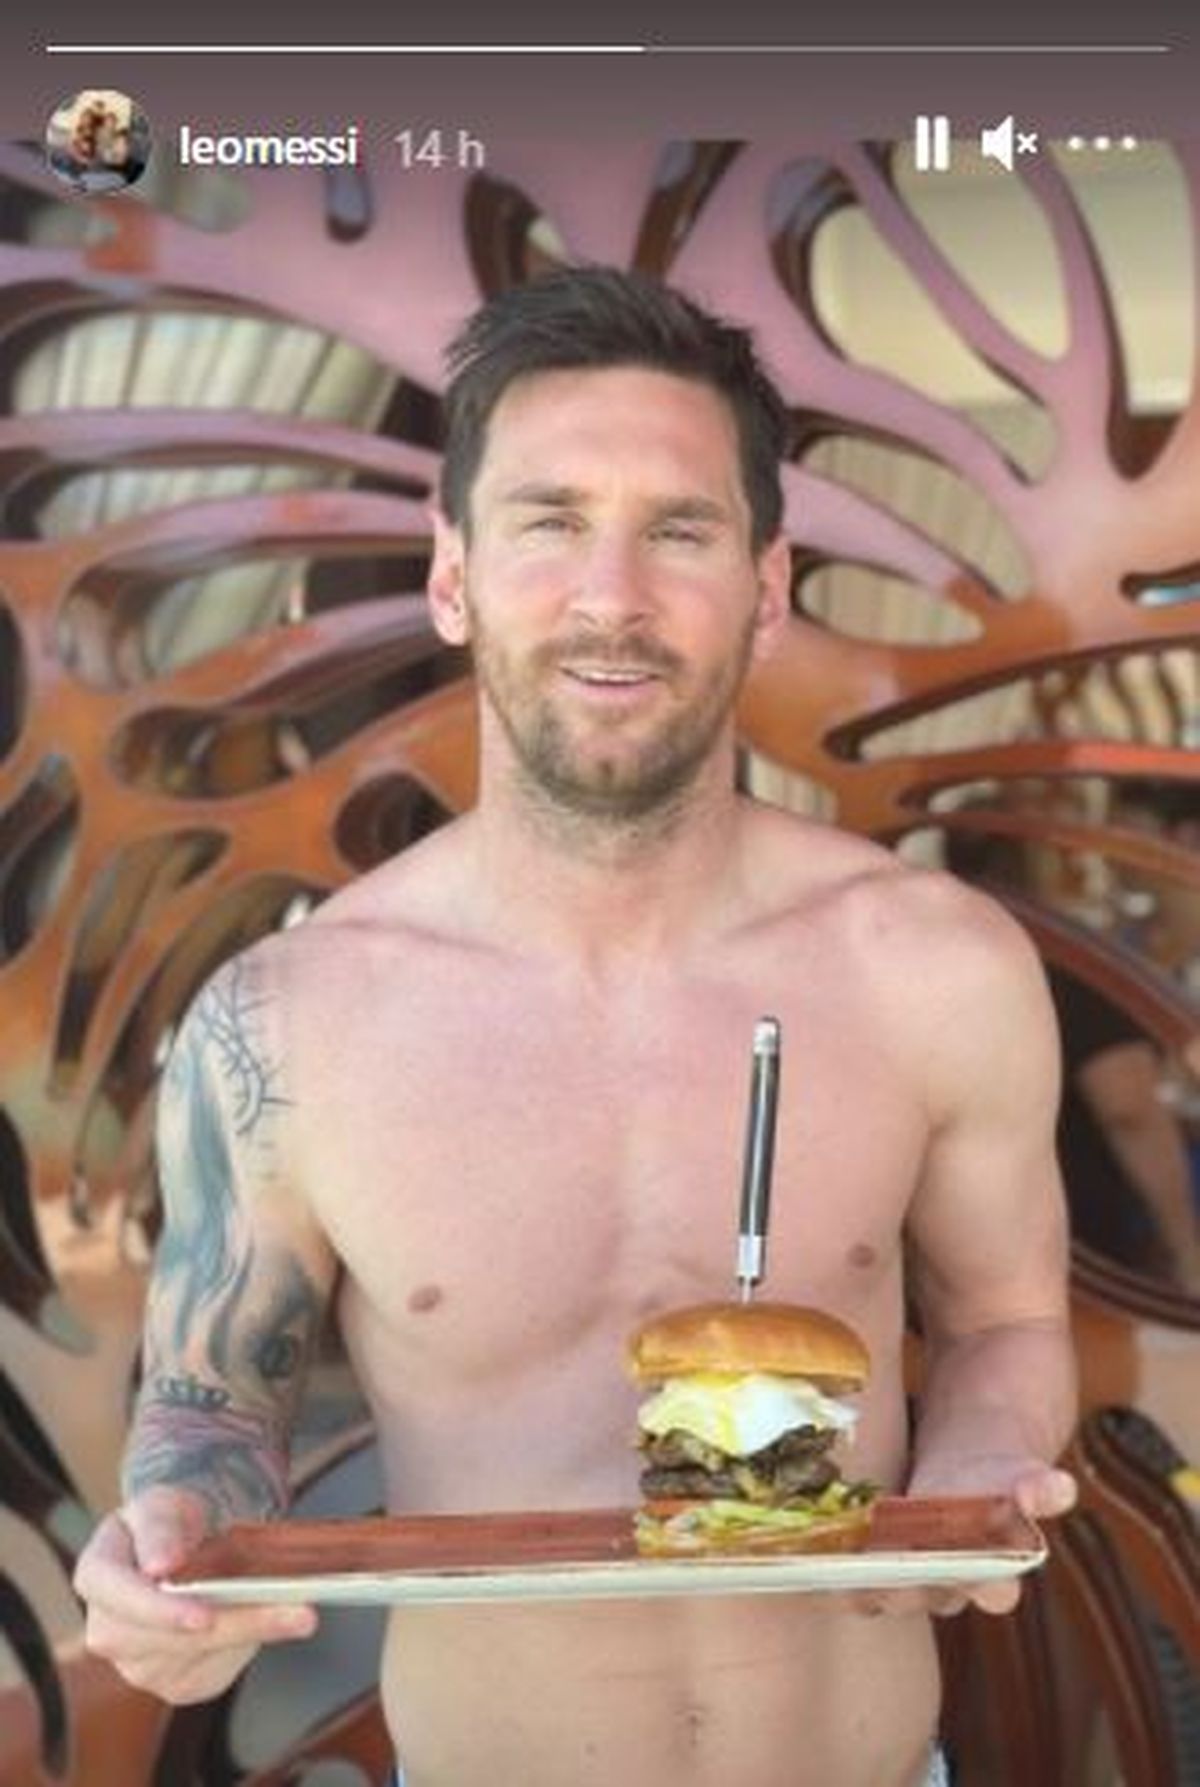 Esta es la foto que Lionel Messi compartió junto a la hamburgesa 